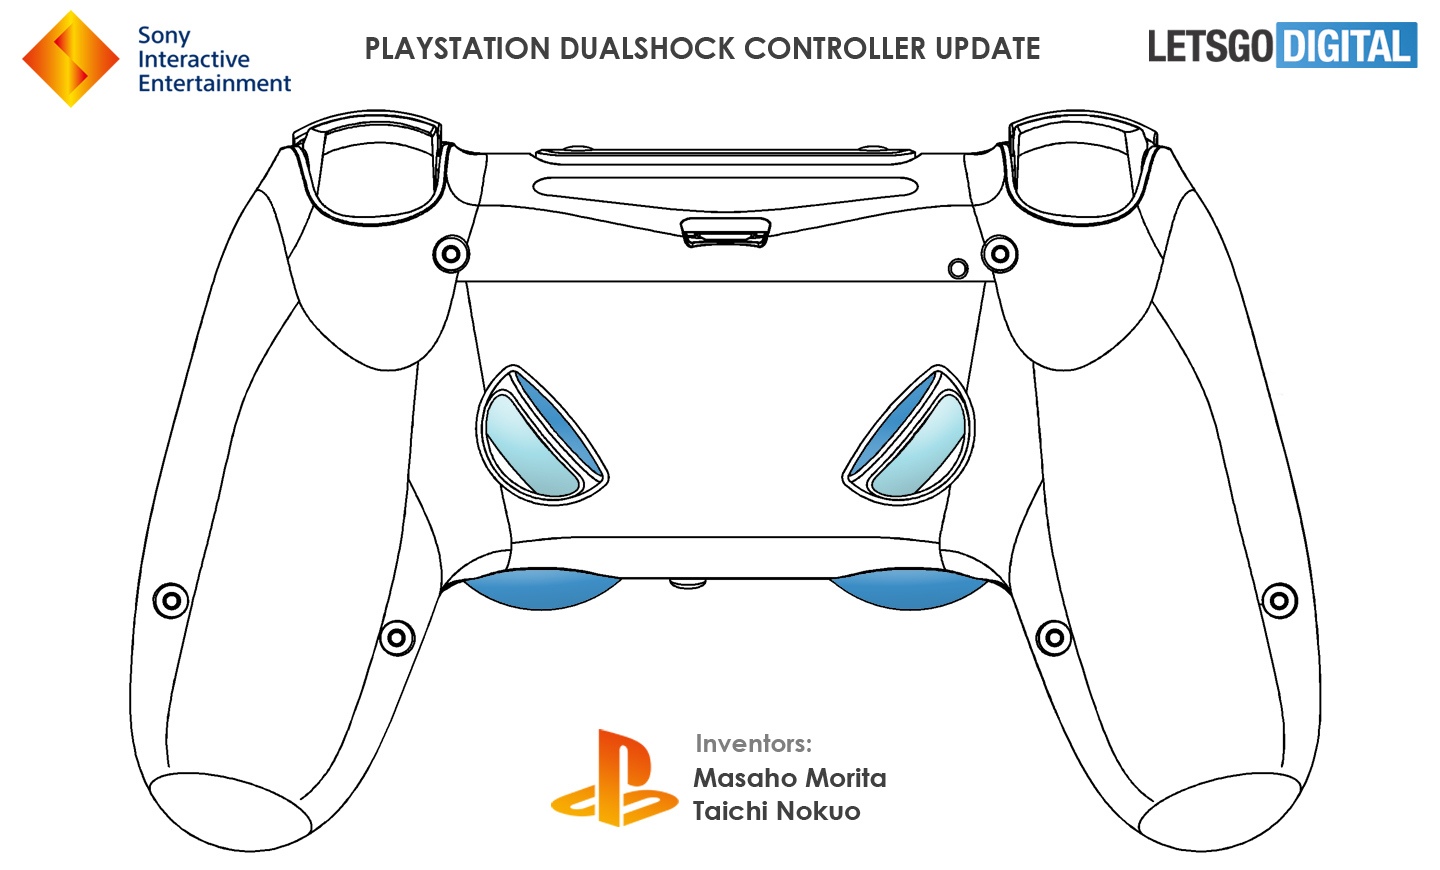 У геймпада PlayStation 5 может быть 4 дополнительные кнопки